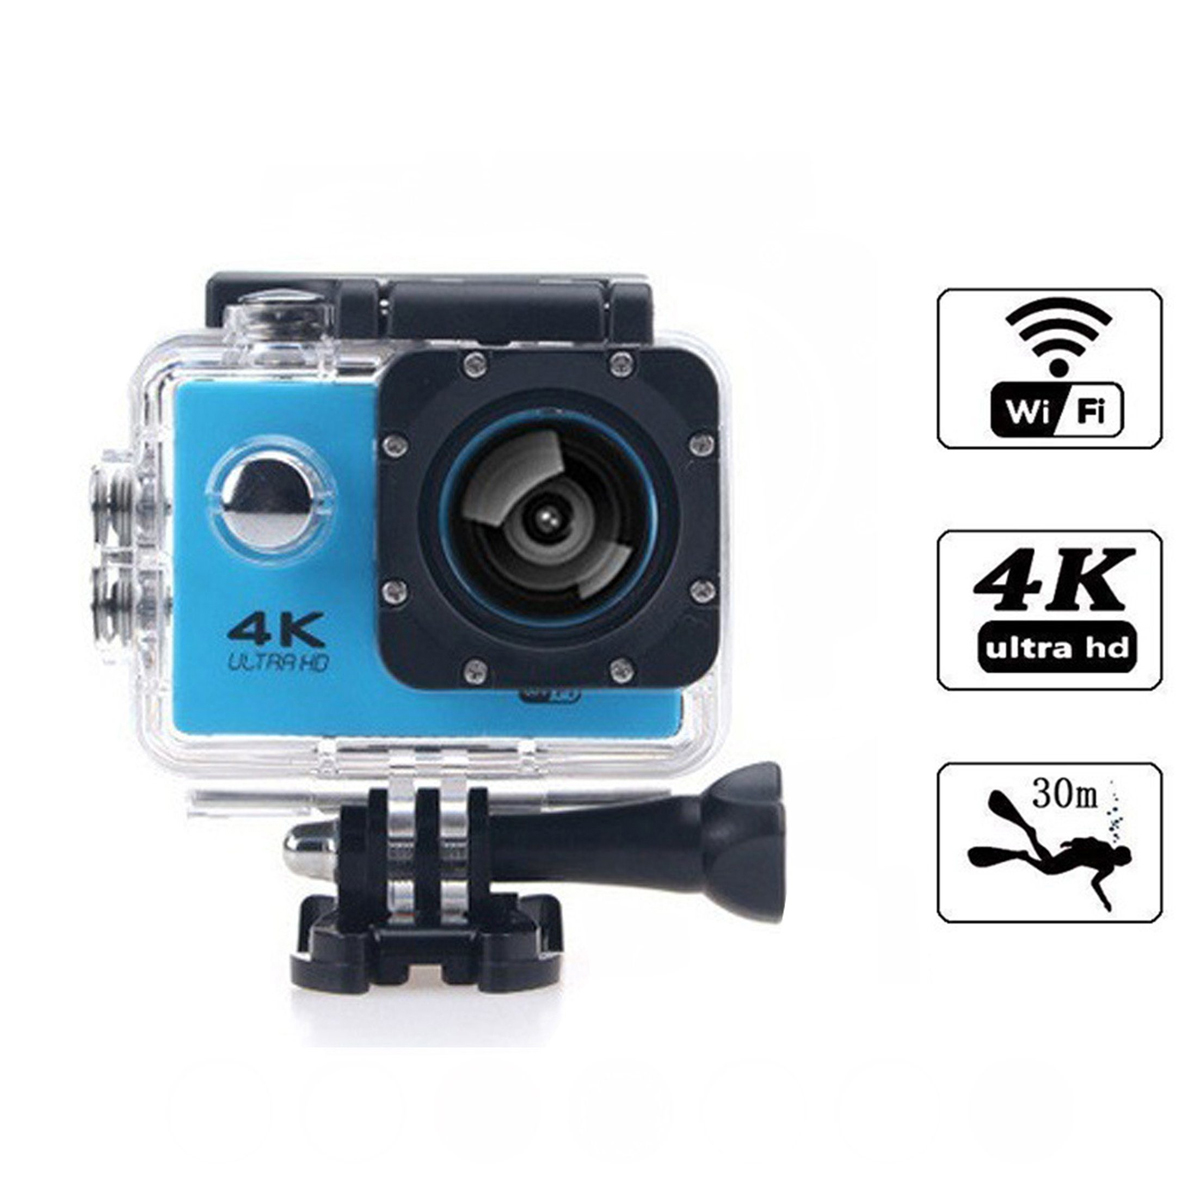 Action-Kamera HD-Kameras,4K-Sportkameras,30m KINSI wasserdicht,WiFi-Synchronisation,Unterwasserkameras